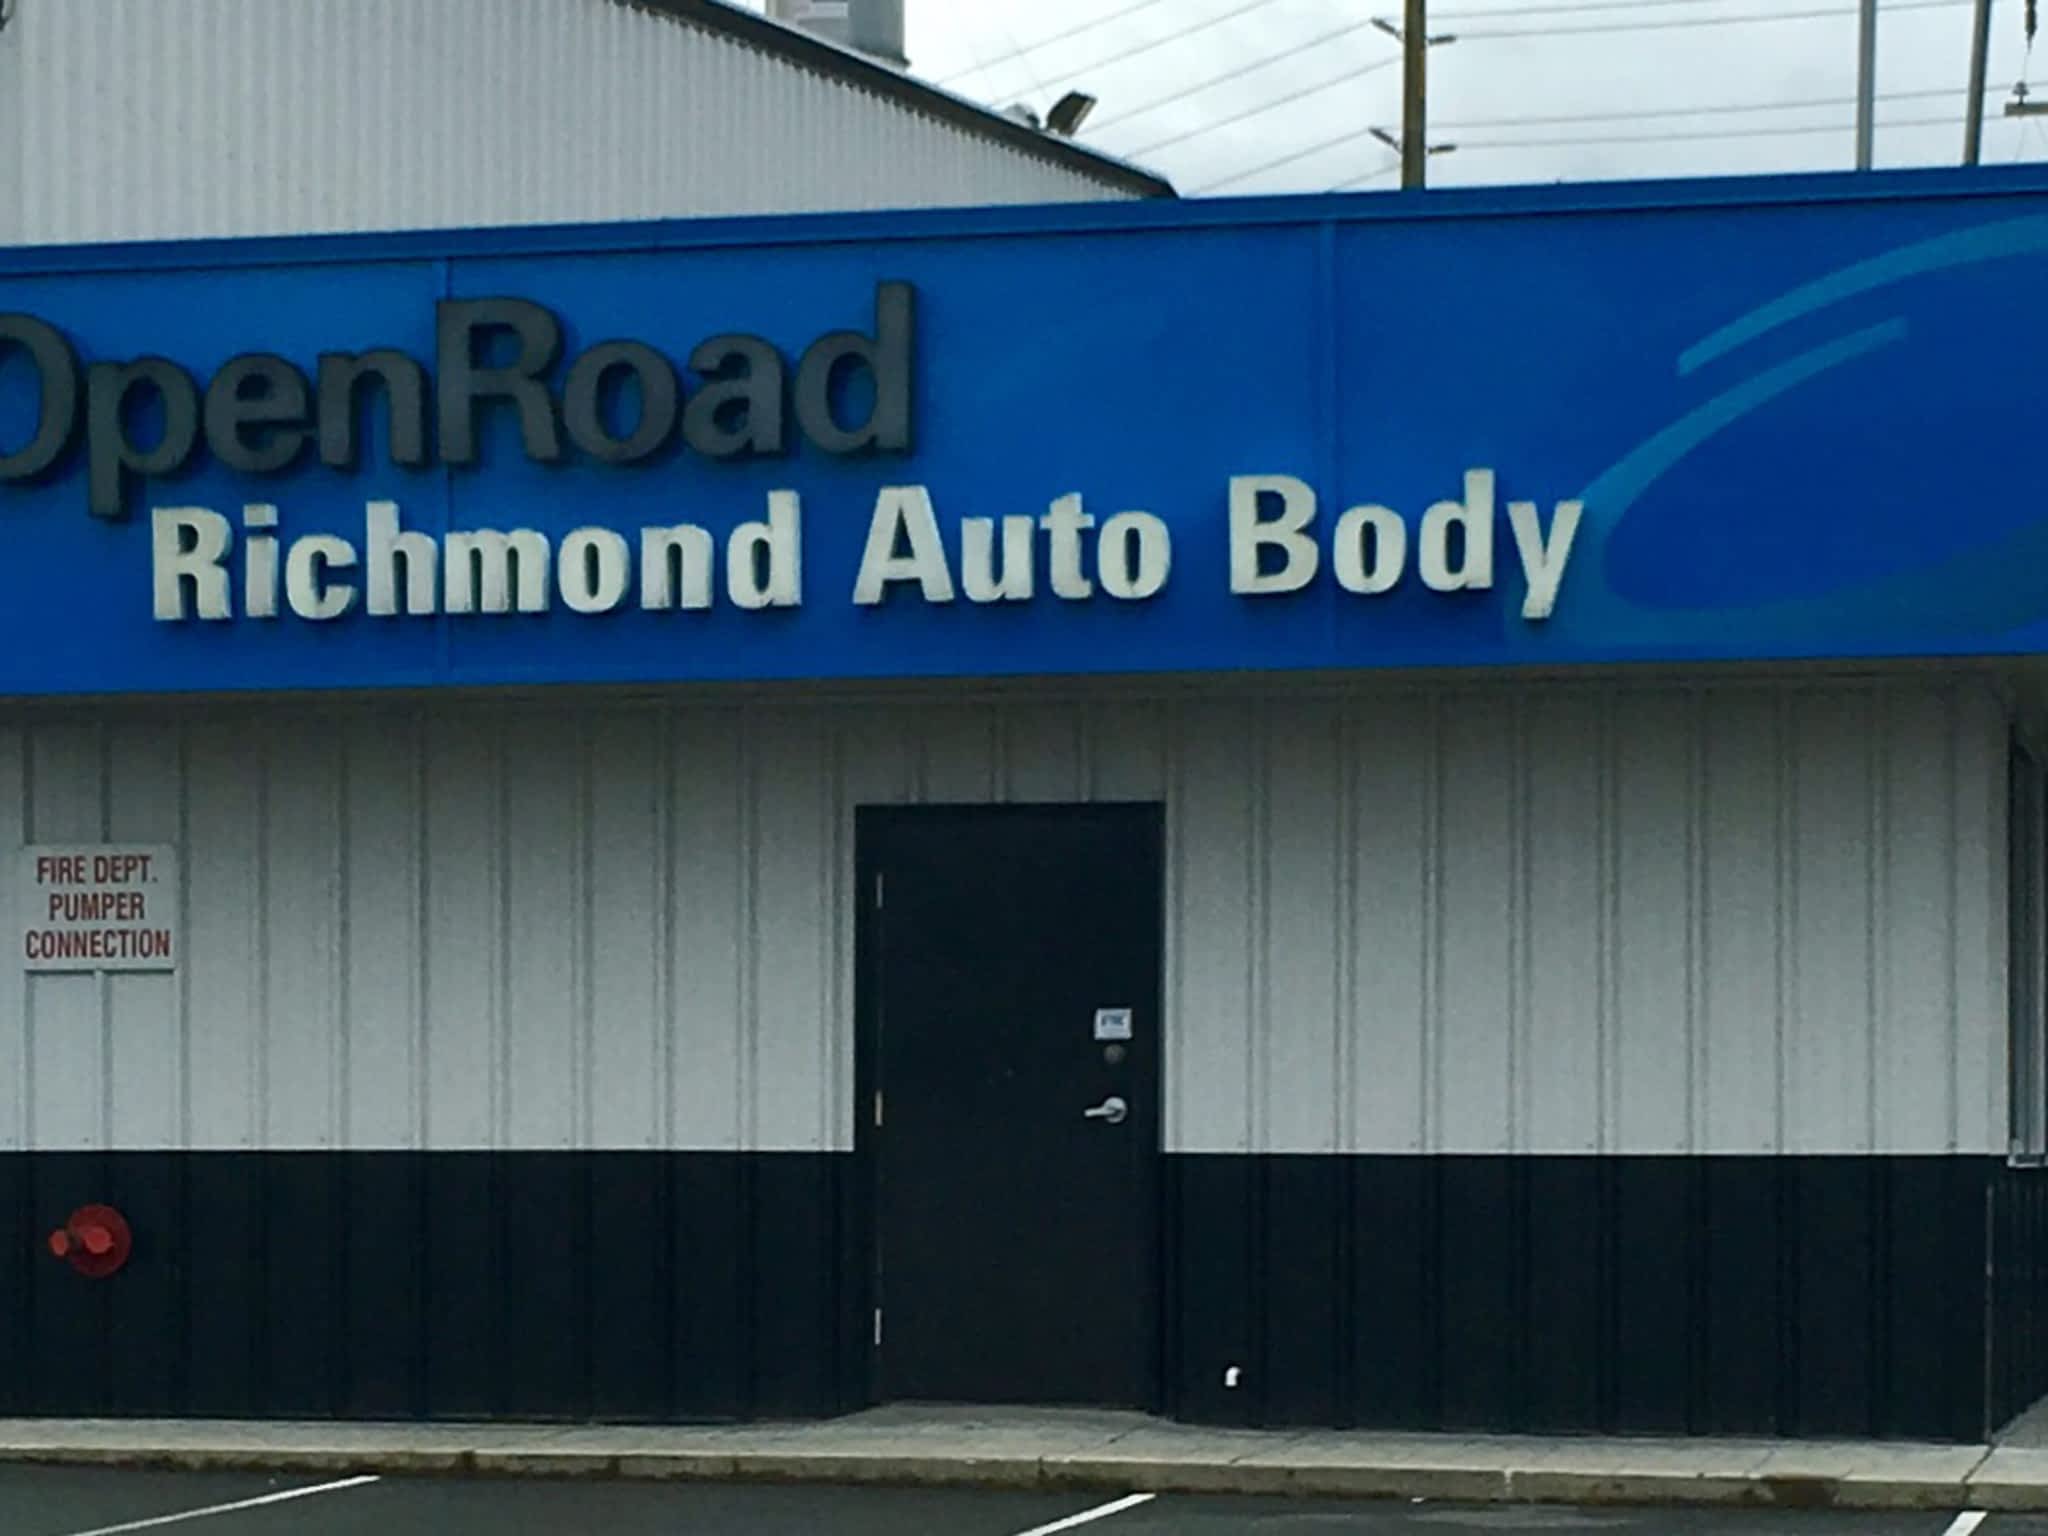 photo Open Road Richmond Auto Body